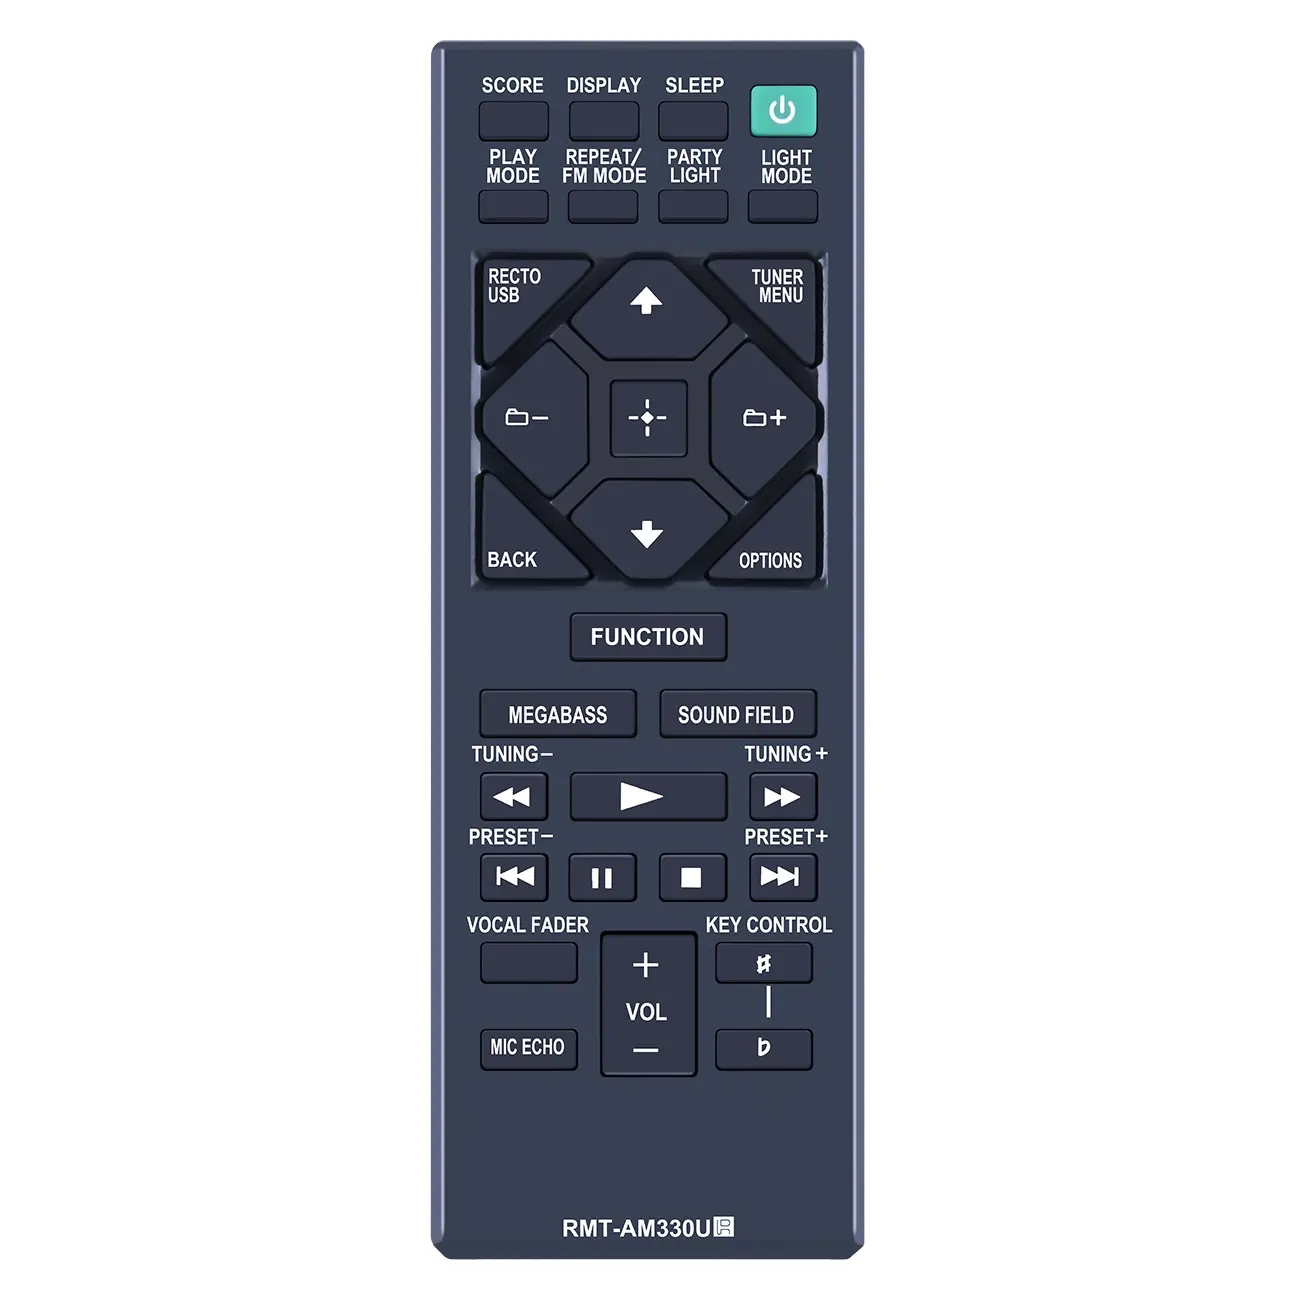 RMT-AM330U ใหม่สำหรับ Sony Hi-Fi ระบบเครื่องเสียงในบ้านรีโมทคอนโทรล SHAKE-X10 MHC-V50 MHC-V71 MHC-V11 MHC-V77W MHC-V21 MHC-M20